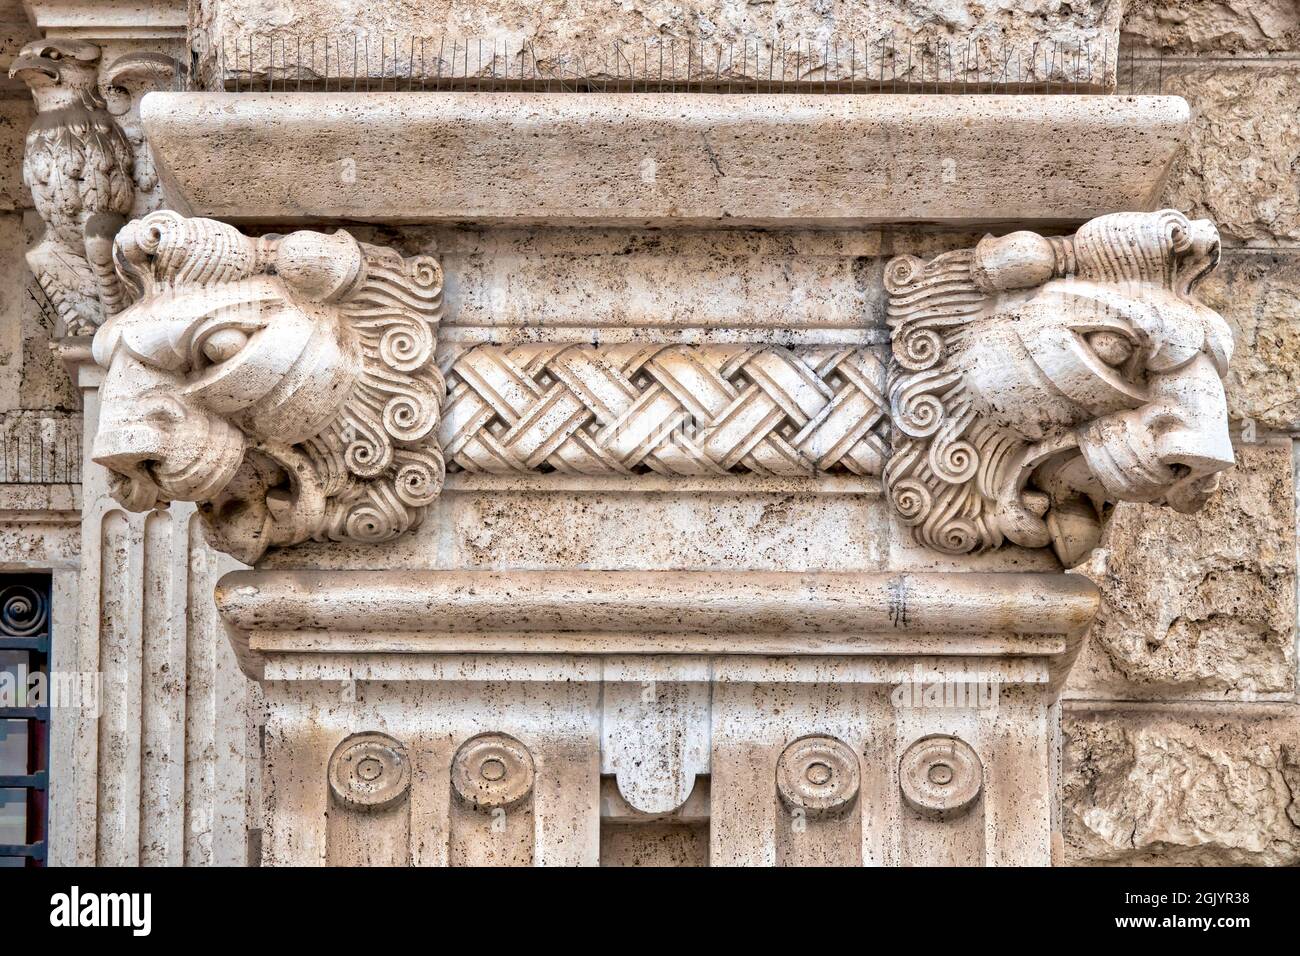 Détail des décorations sur le Palazzo del Ragno dans le quartier Coppedè, Rome Italie Banque D'Images